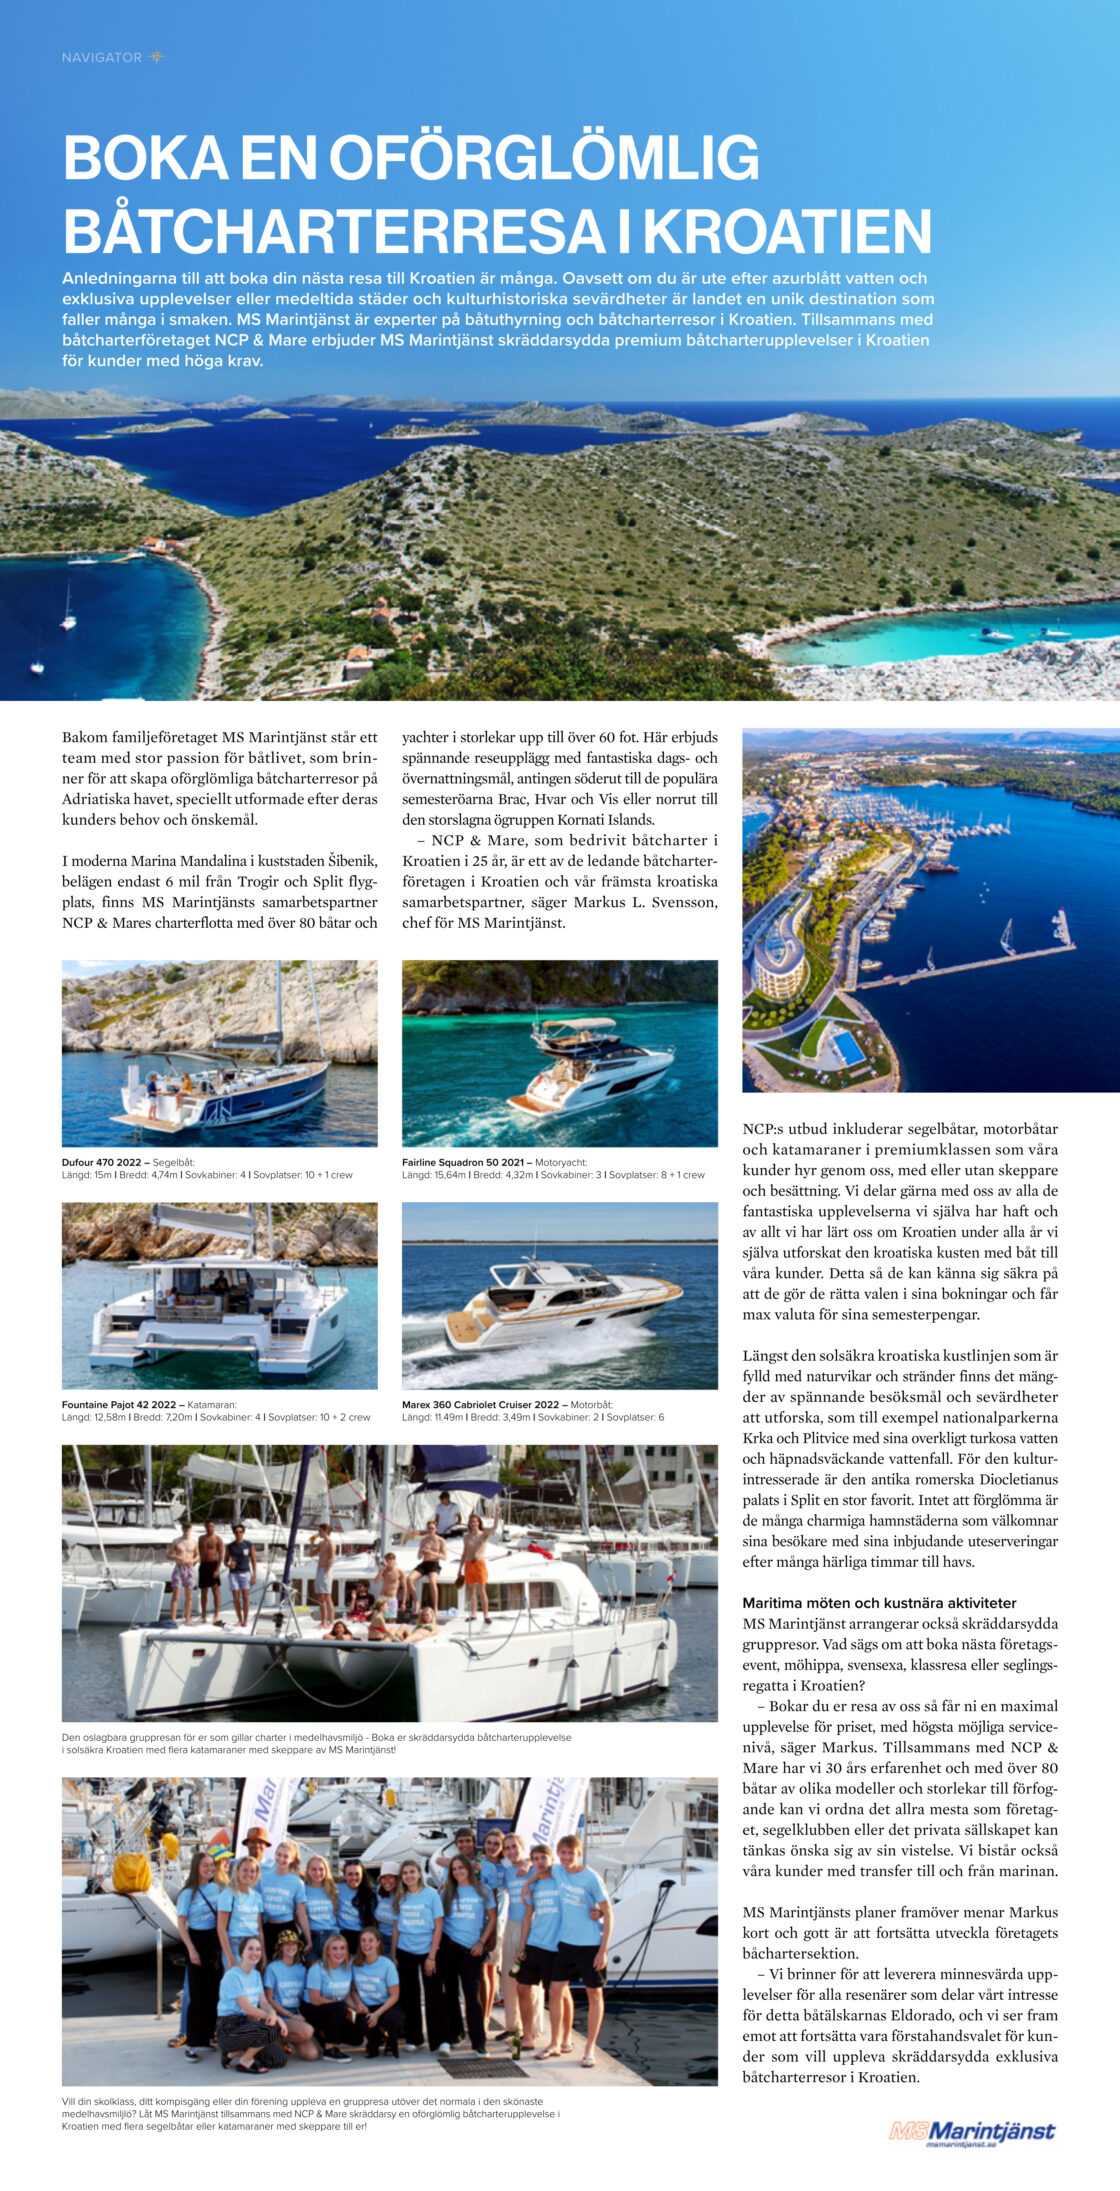 Premium Båtcharter i Kroatien med MS Marintjänst och NCP & Mare